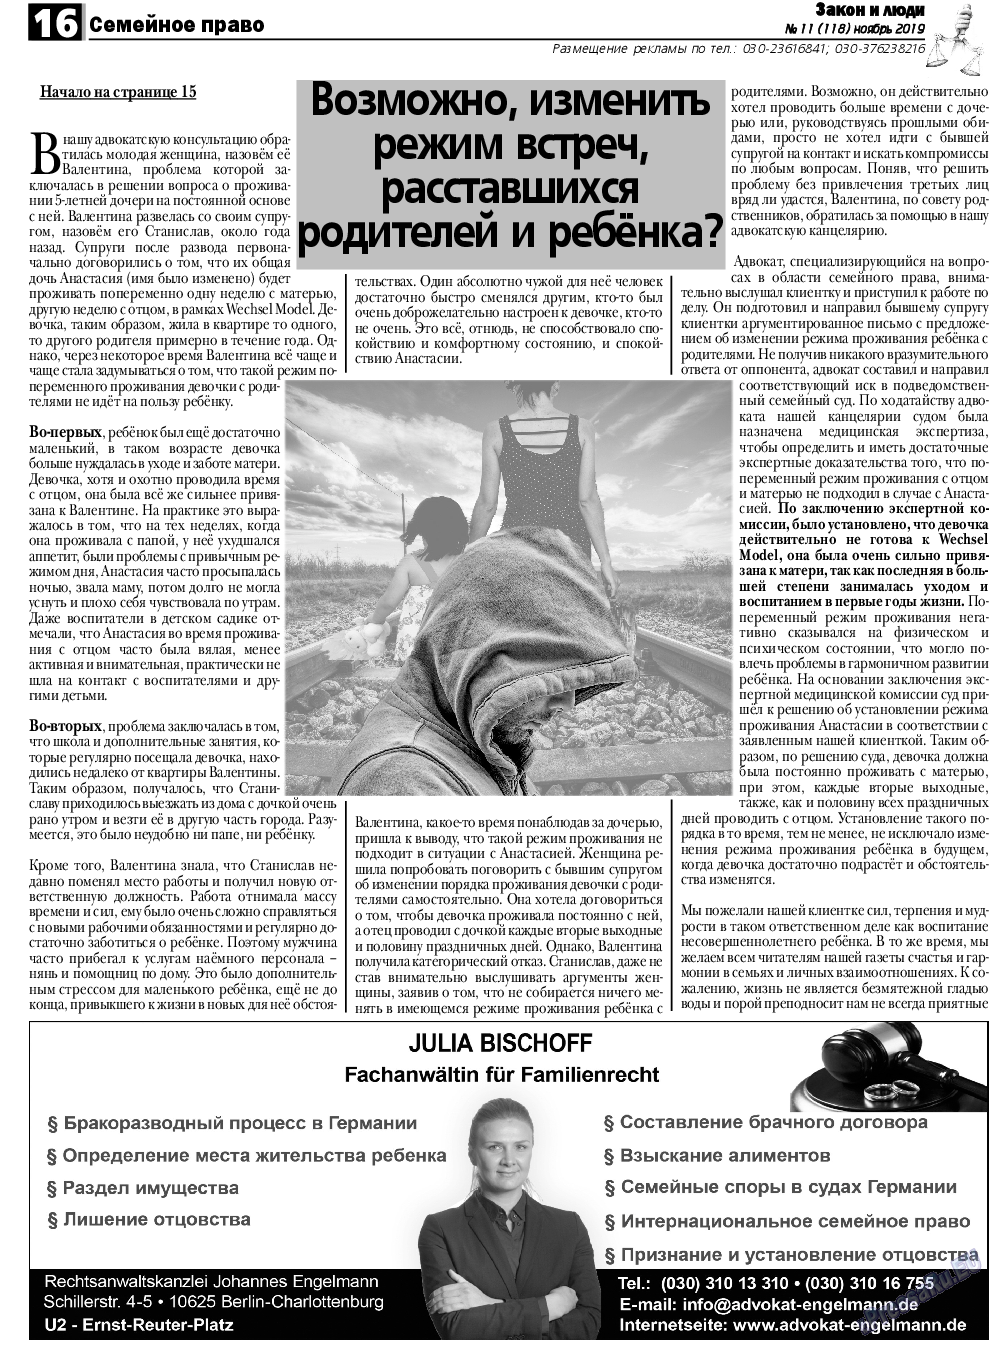 Закон и люди, газета. 2019 №11 стр.16